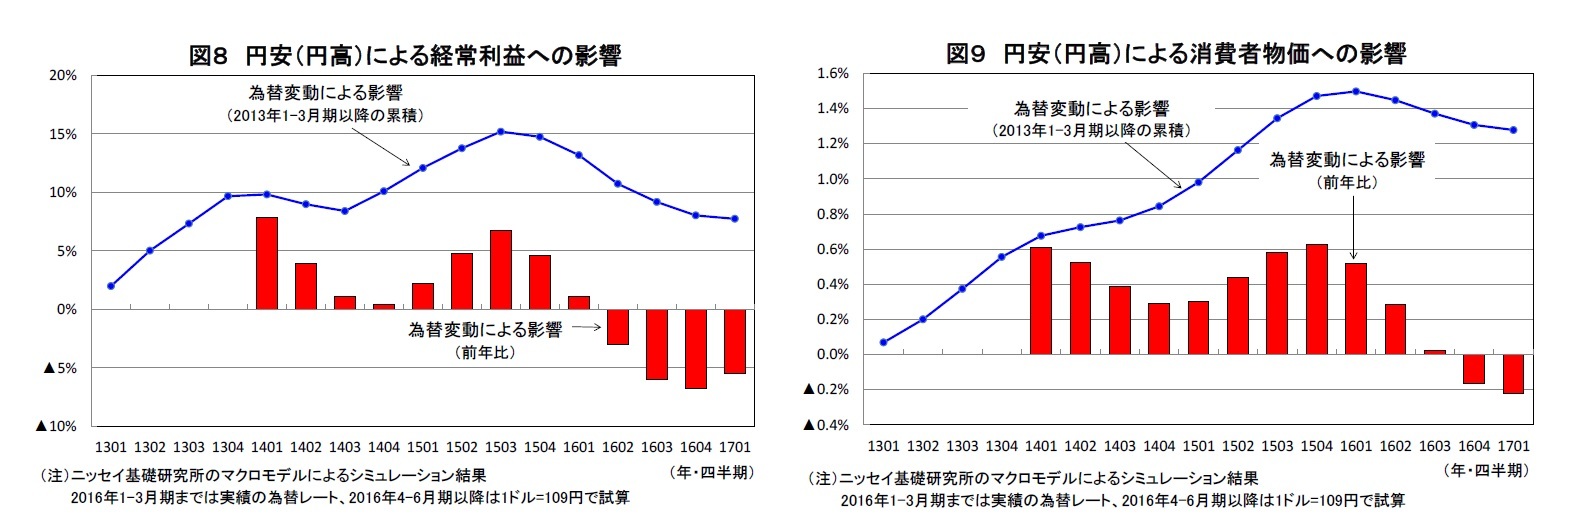 図８ 円安（円高）による経常利益への影響/図９ 円安（円高）による消費者物価への影響